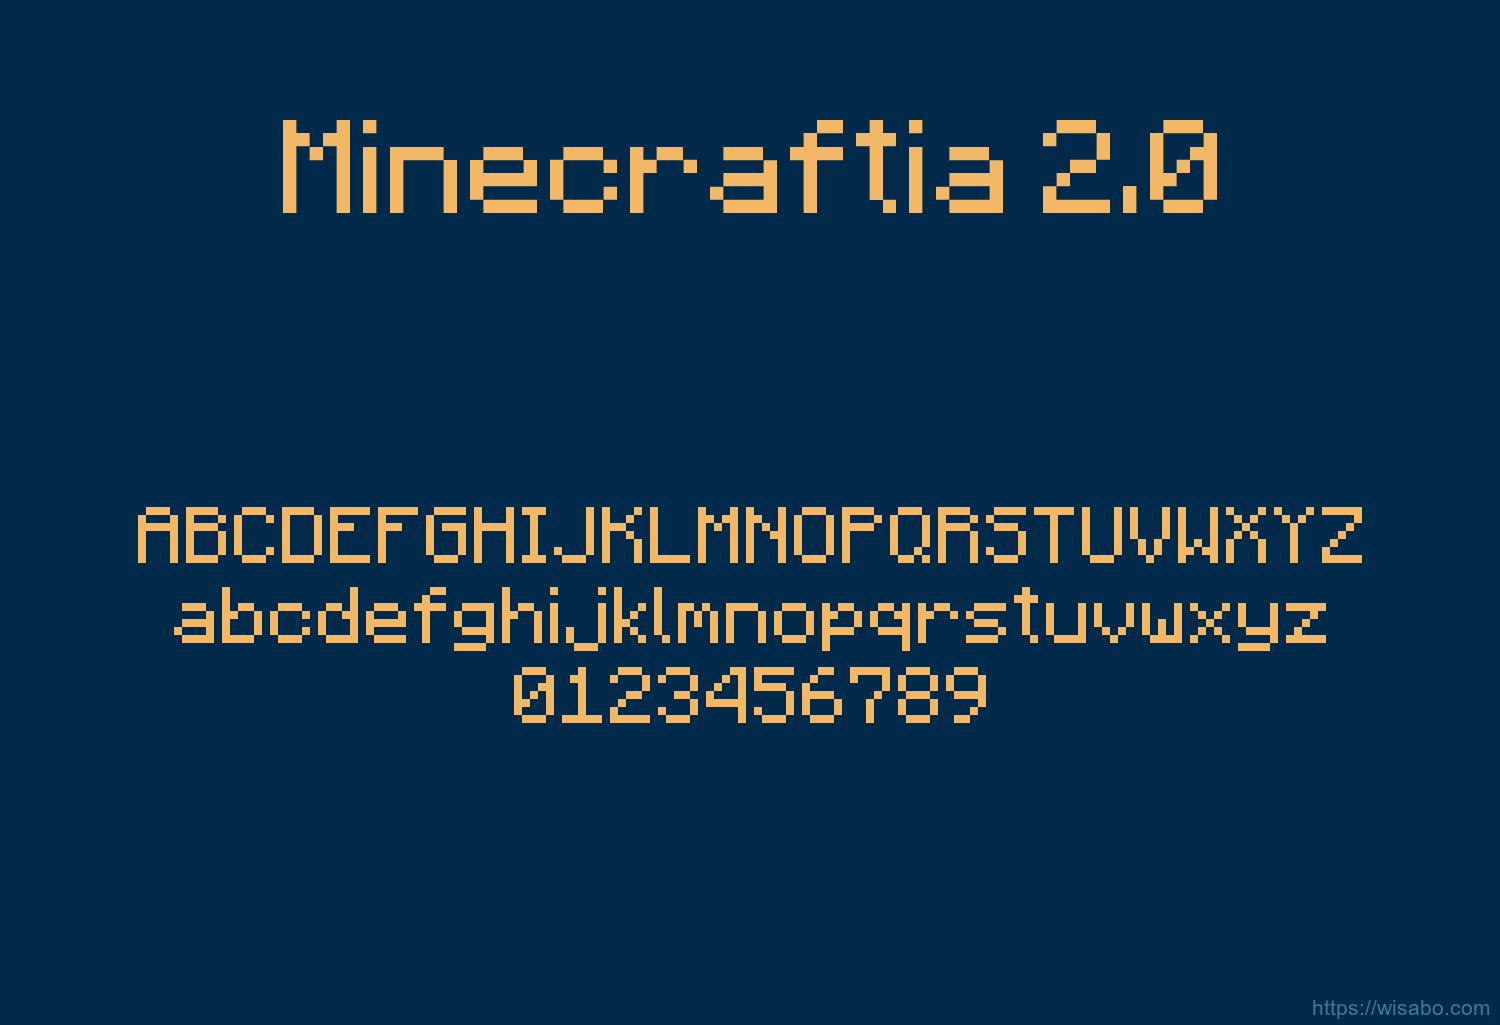 Minecraftia 2.0